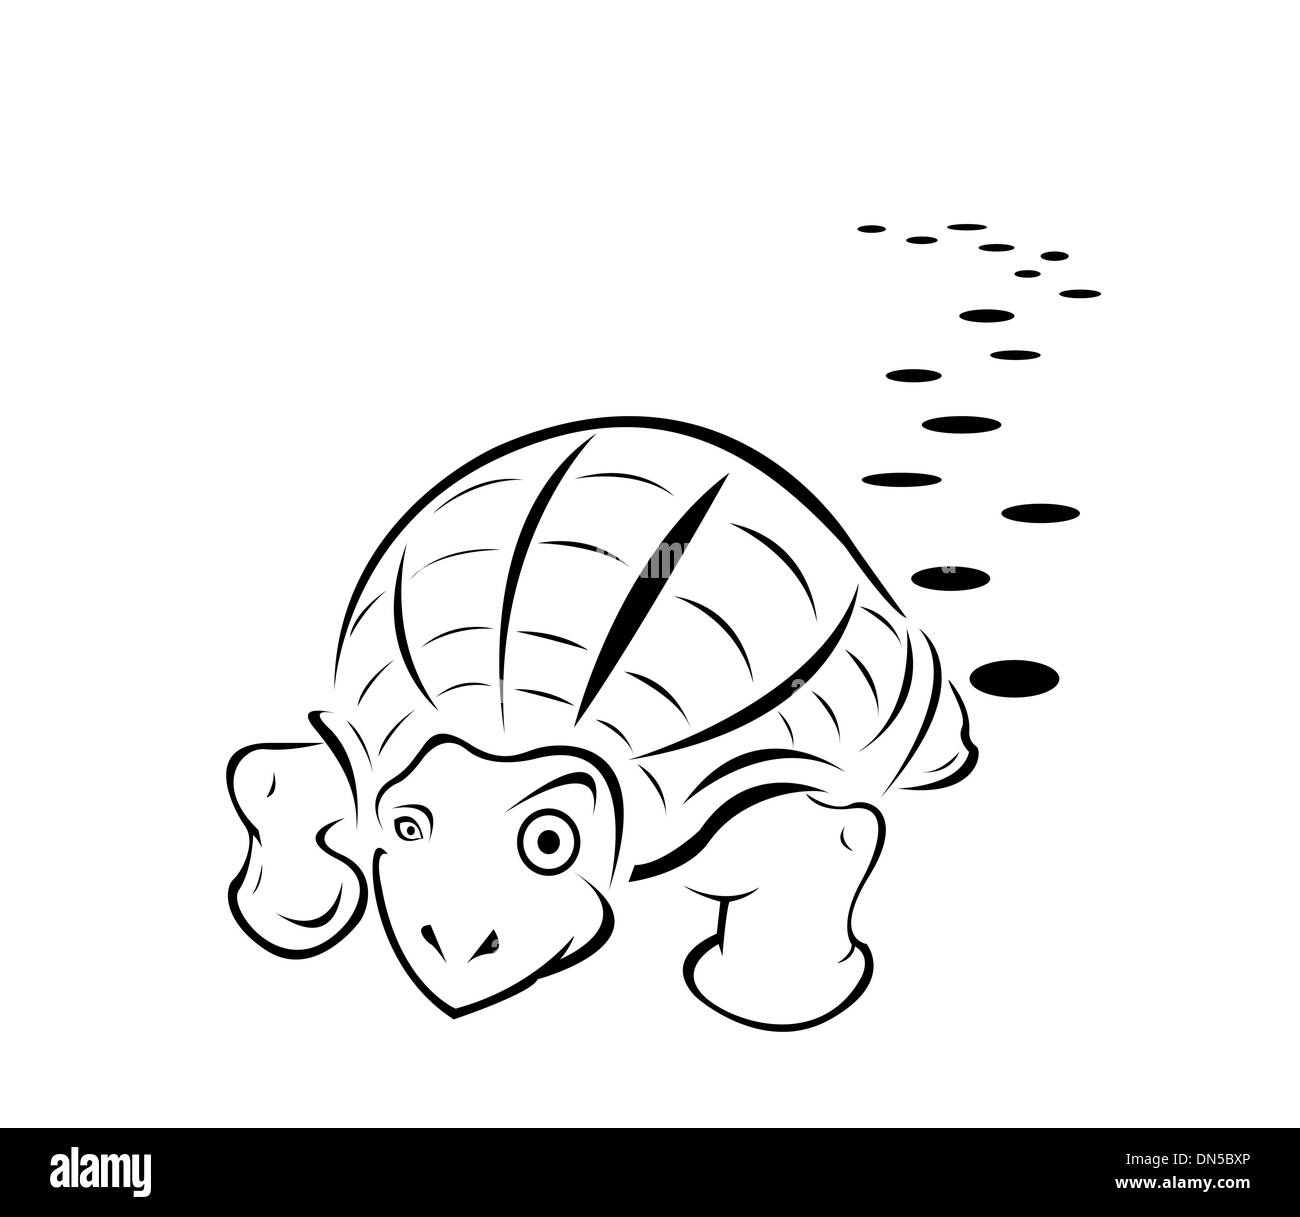 Le noir et blanc coloriage tatouage tortue Illustration de Vecteur